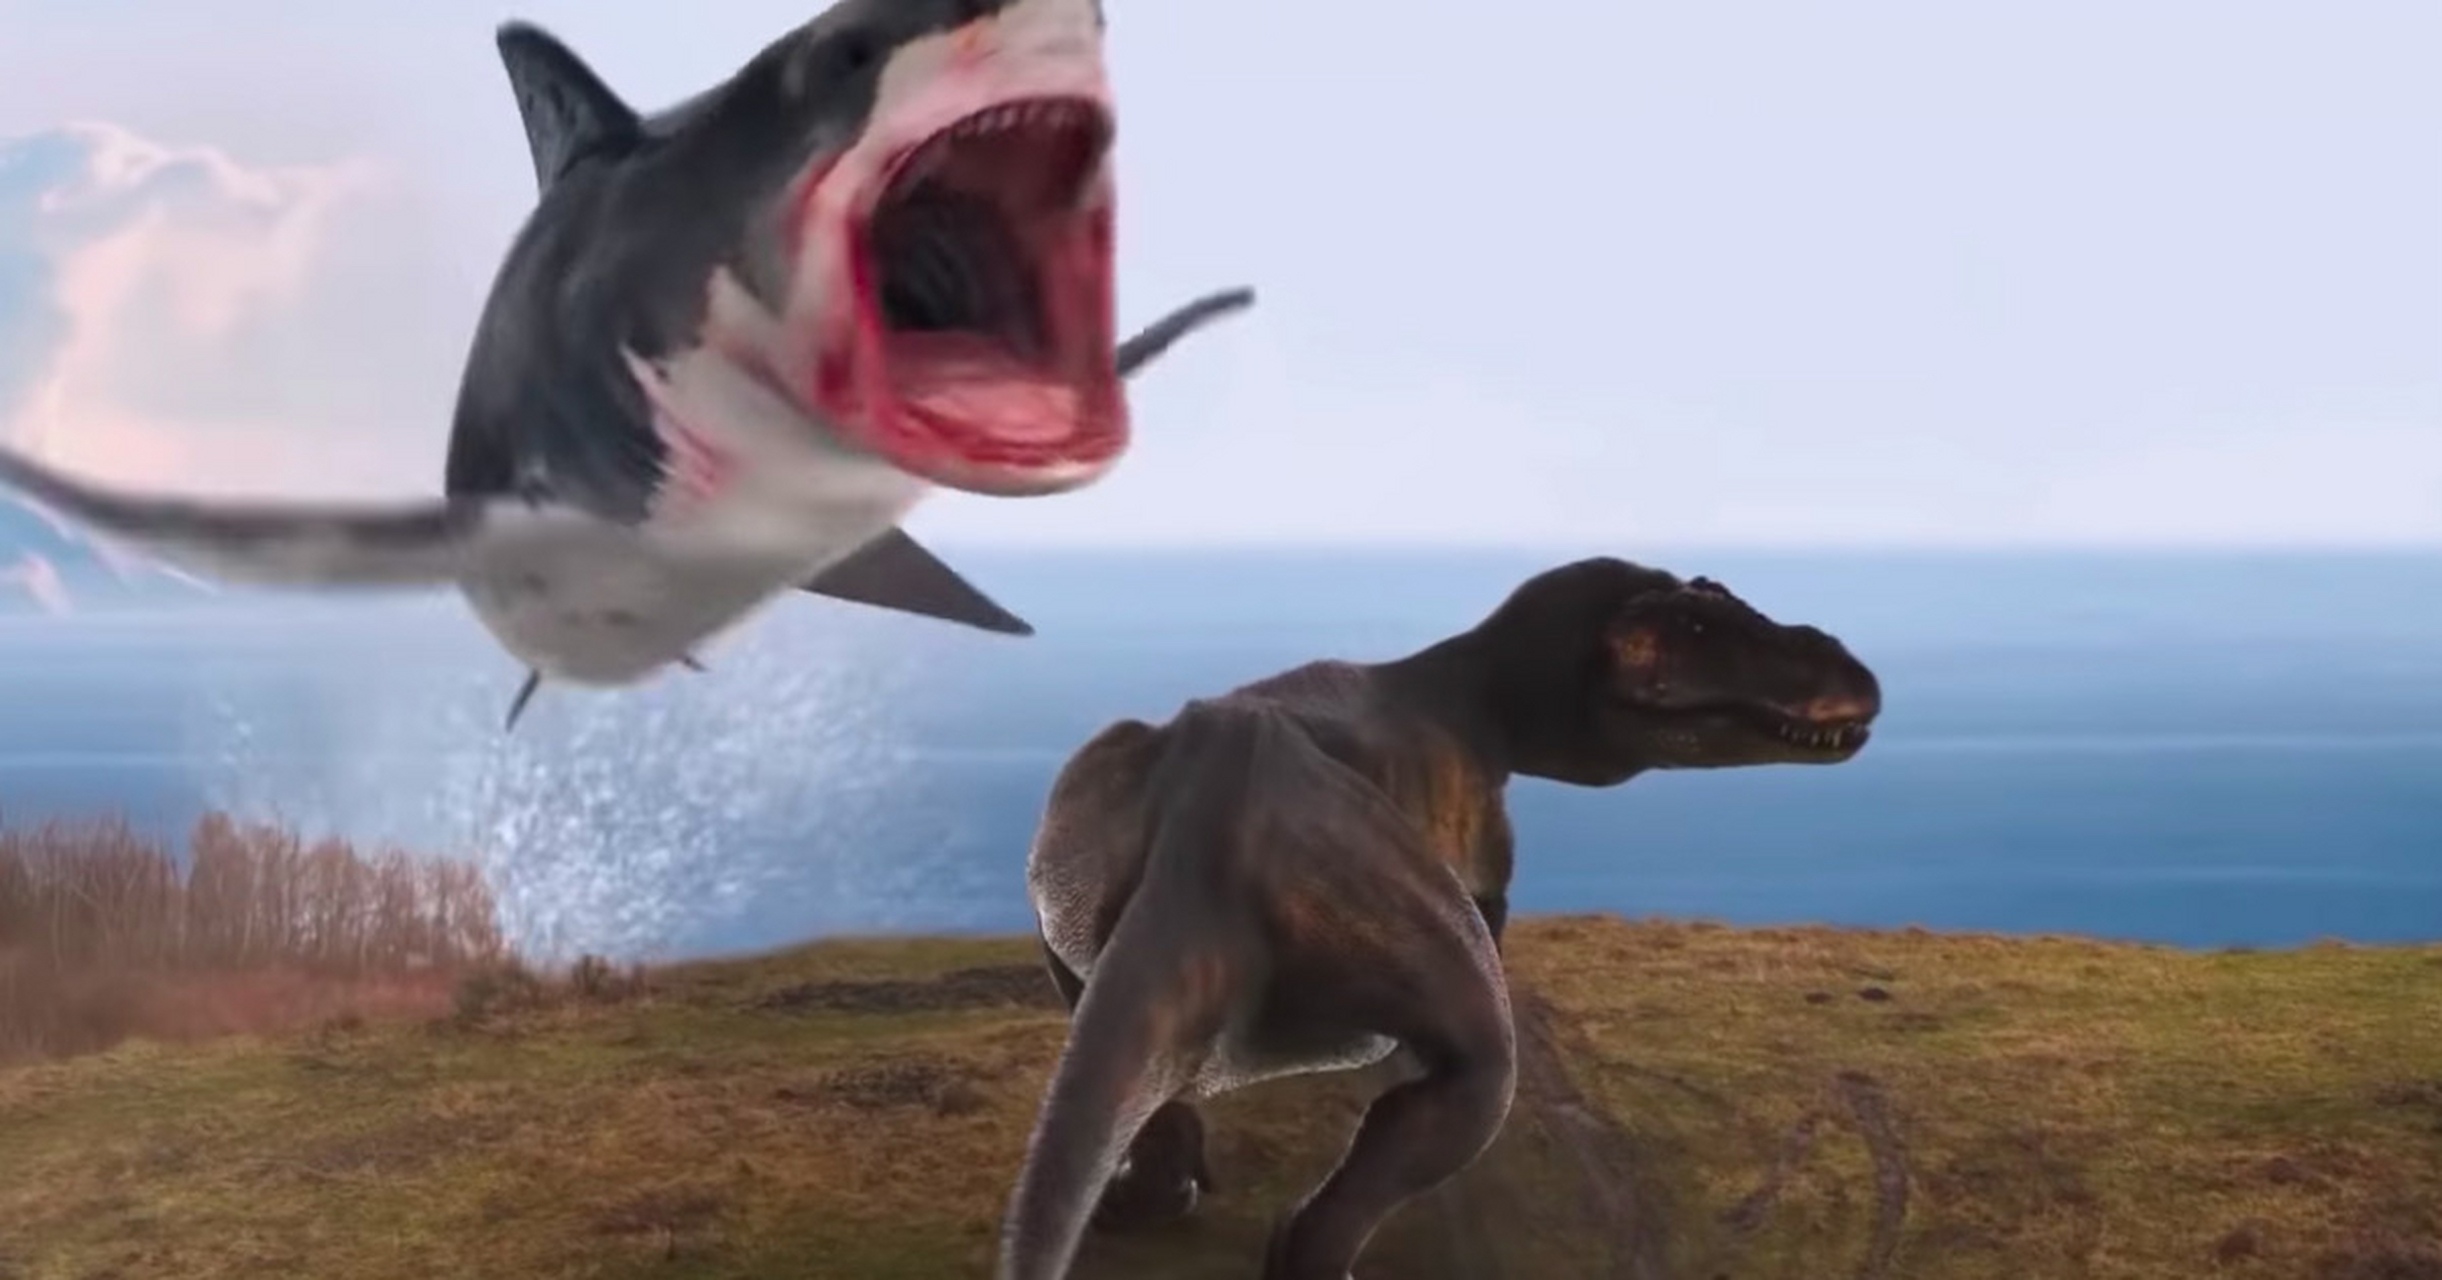 巨齿鲨vs五头鲨图片